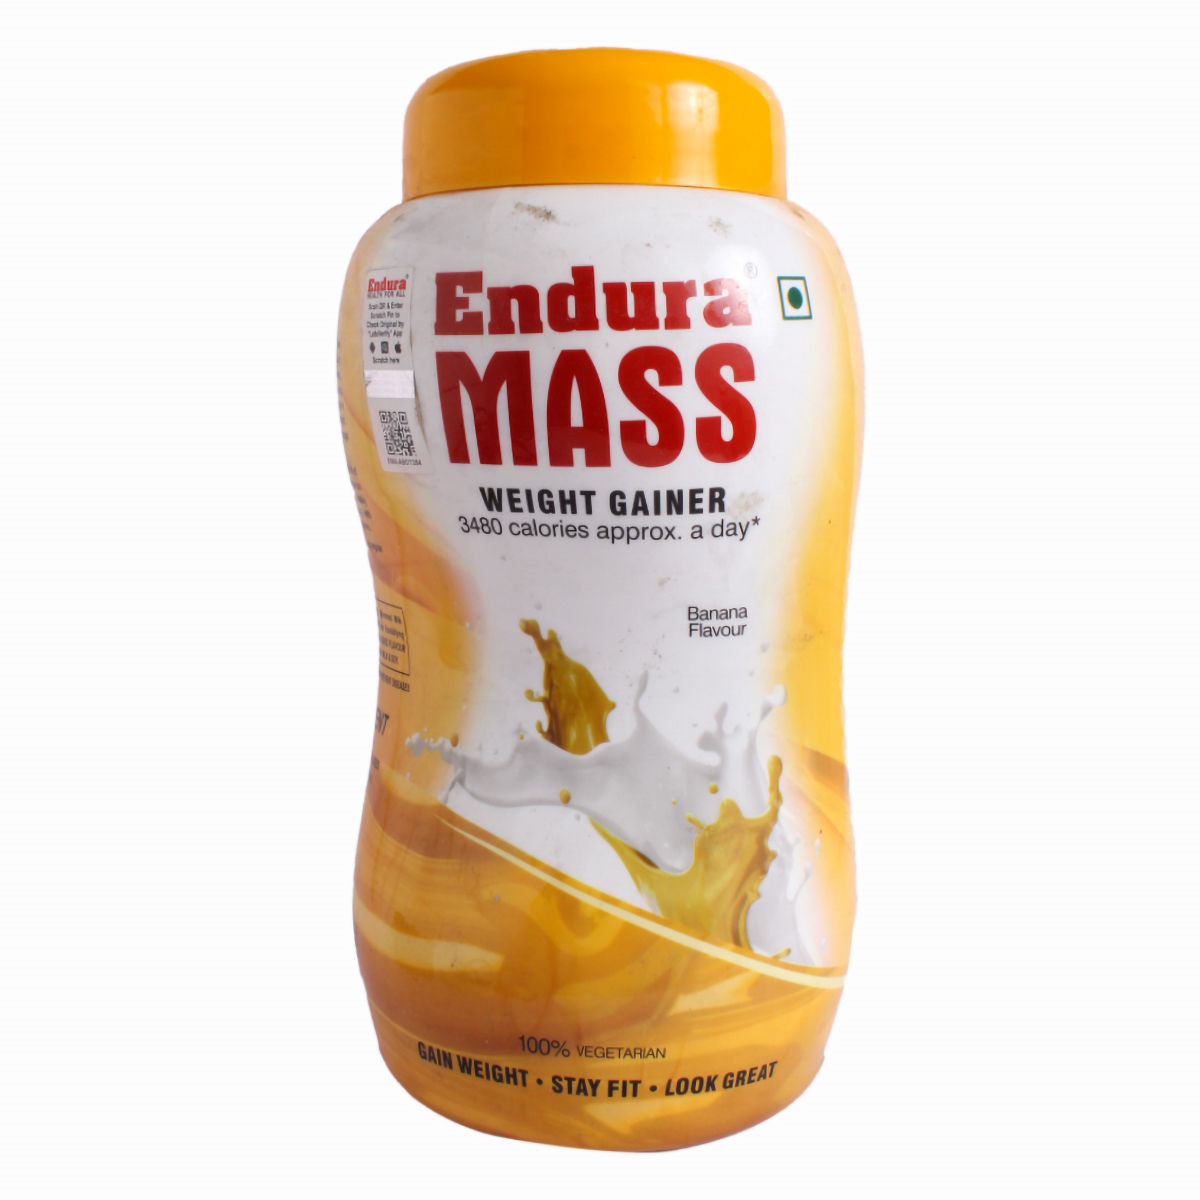 Buy Endura Mass Banana Flavour Weight Gainer Powder, 1 kg Online